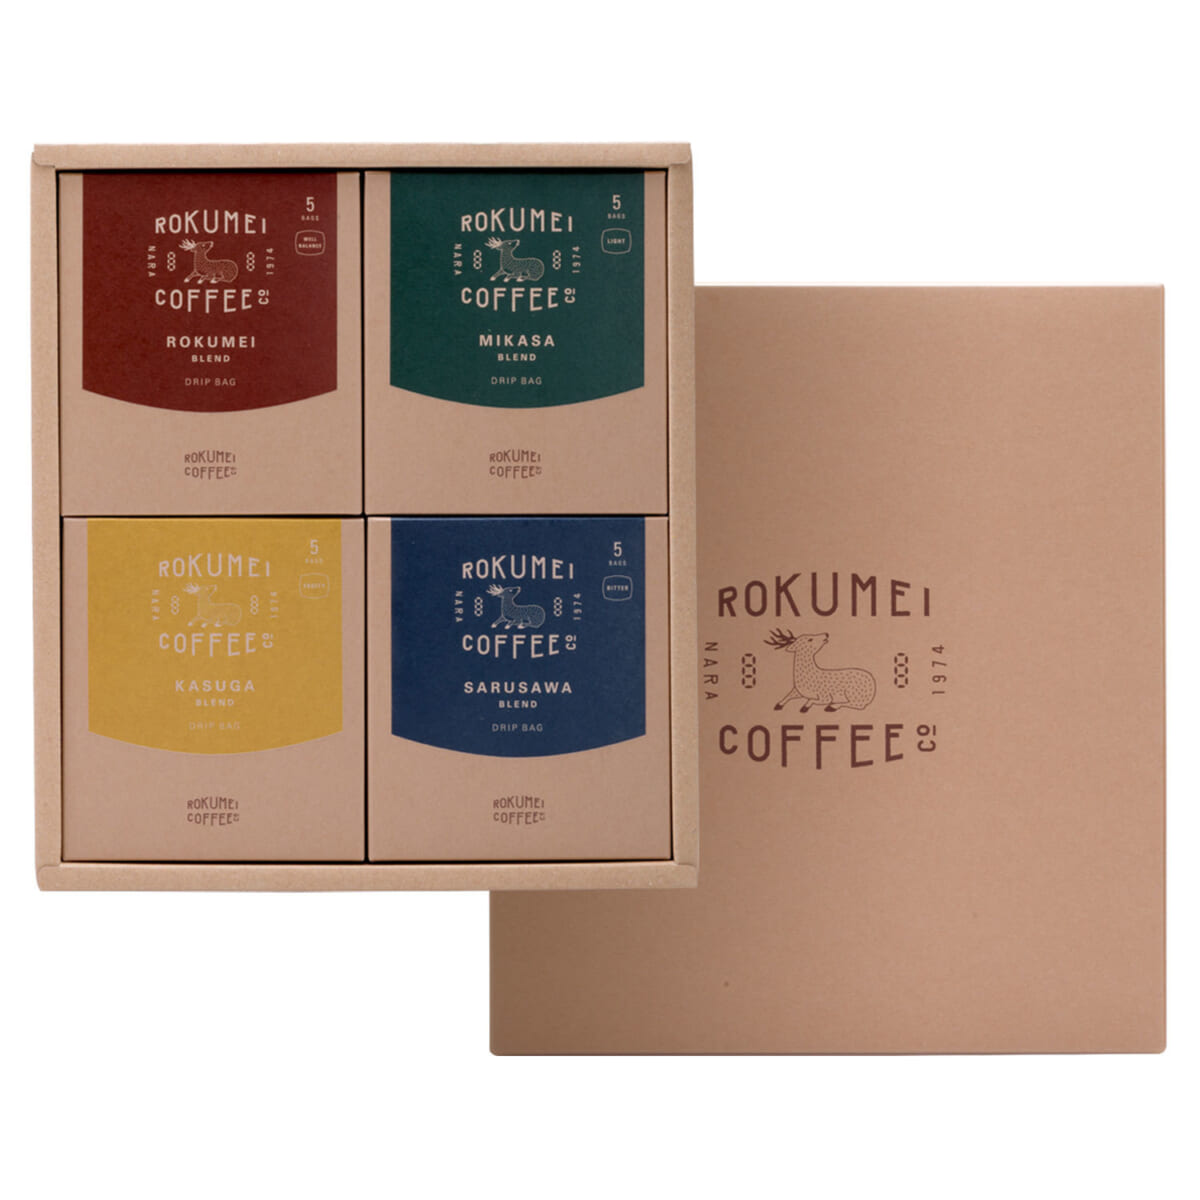 敬老の日に贈りたい「ROKUMEI COFFEE CO.」のギフトセット